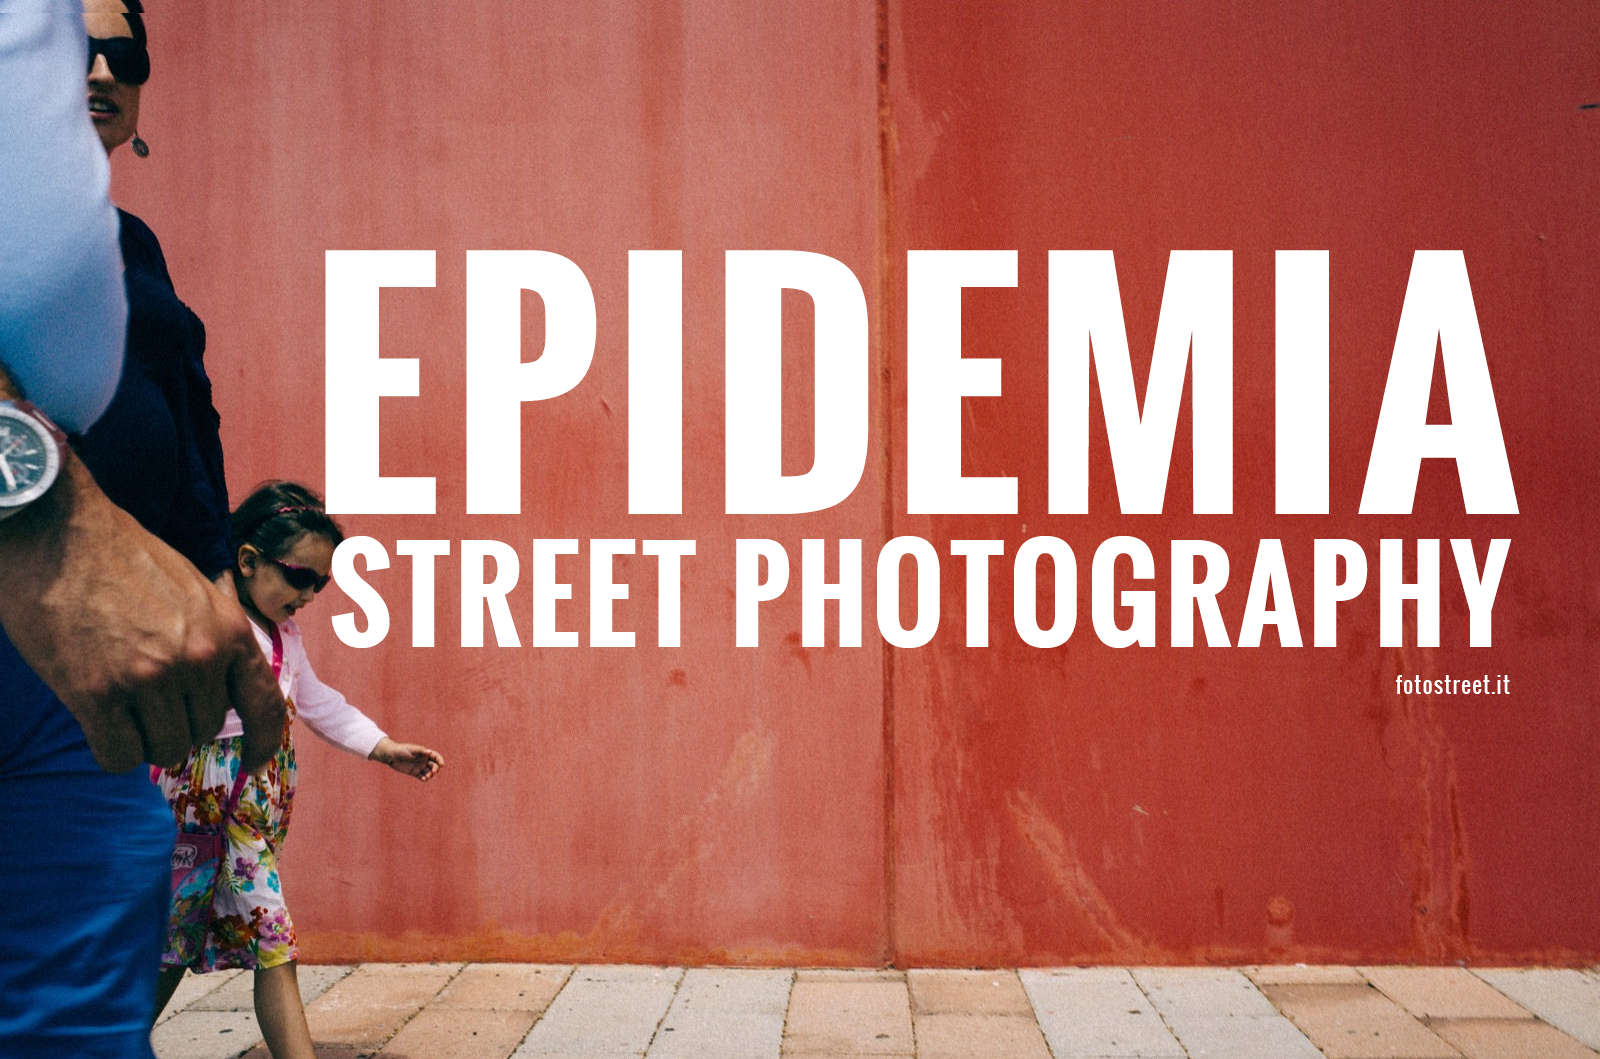 Epidemia Street Photography?